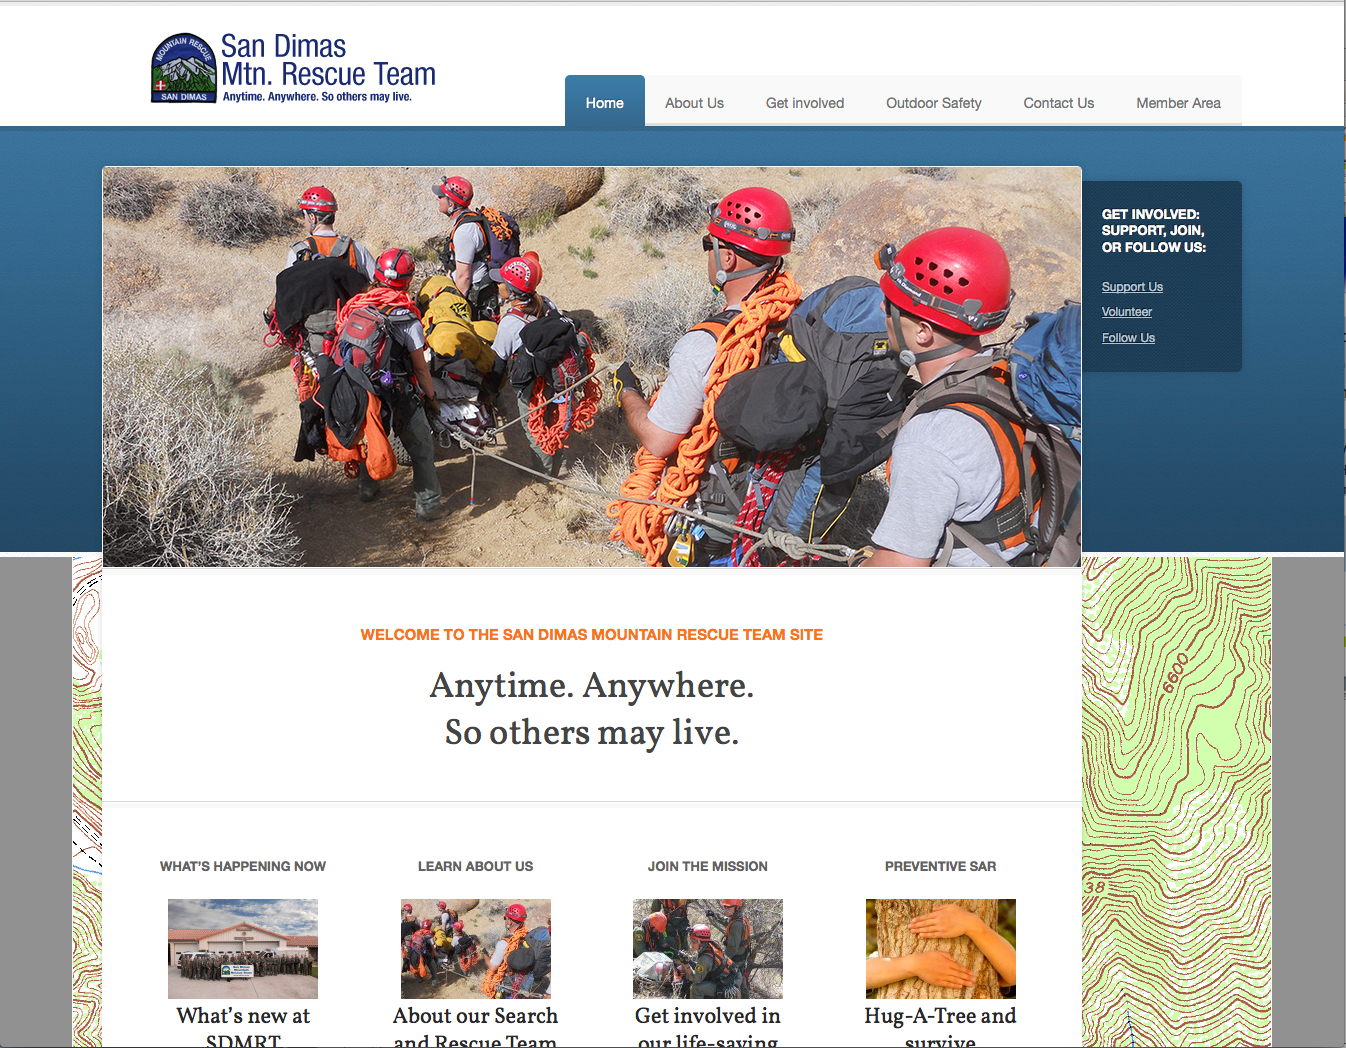 Responsive Design for San Dimas Mountain Rescue Team's website.